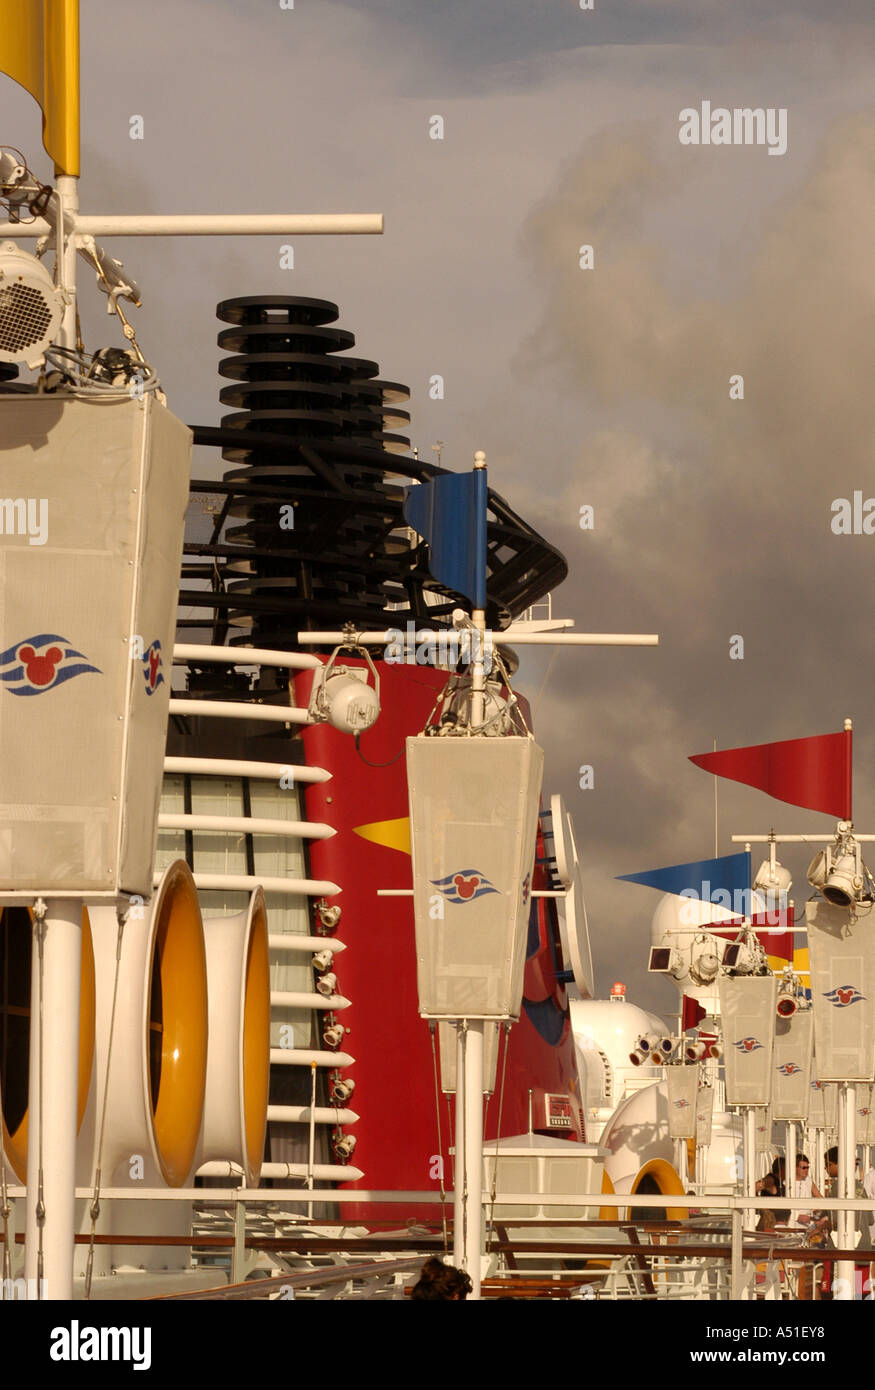 Kreuzfahrt Schiff Disney Wonder Überbau Radar helle Rottöne Schiff Architektur Entwurfsmuster Stockfoto